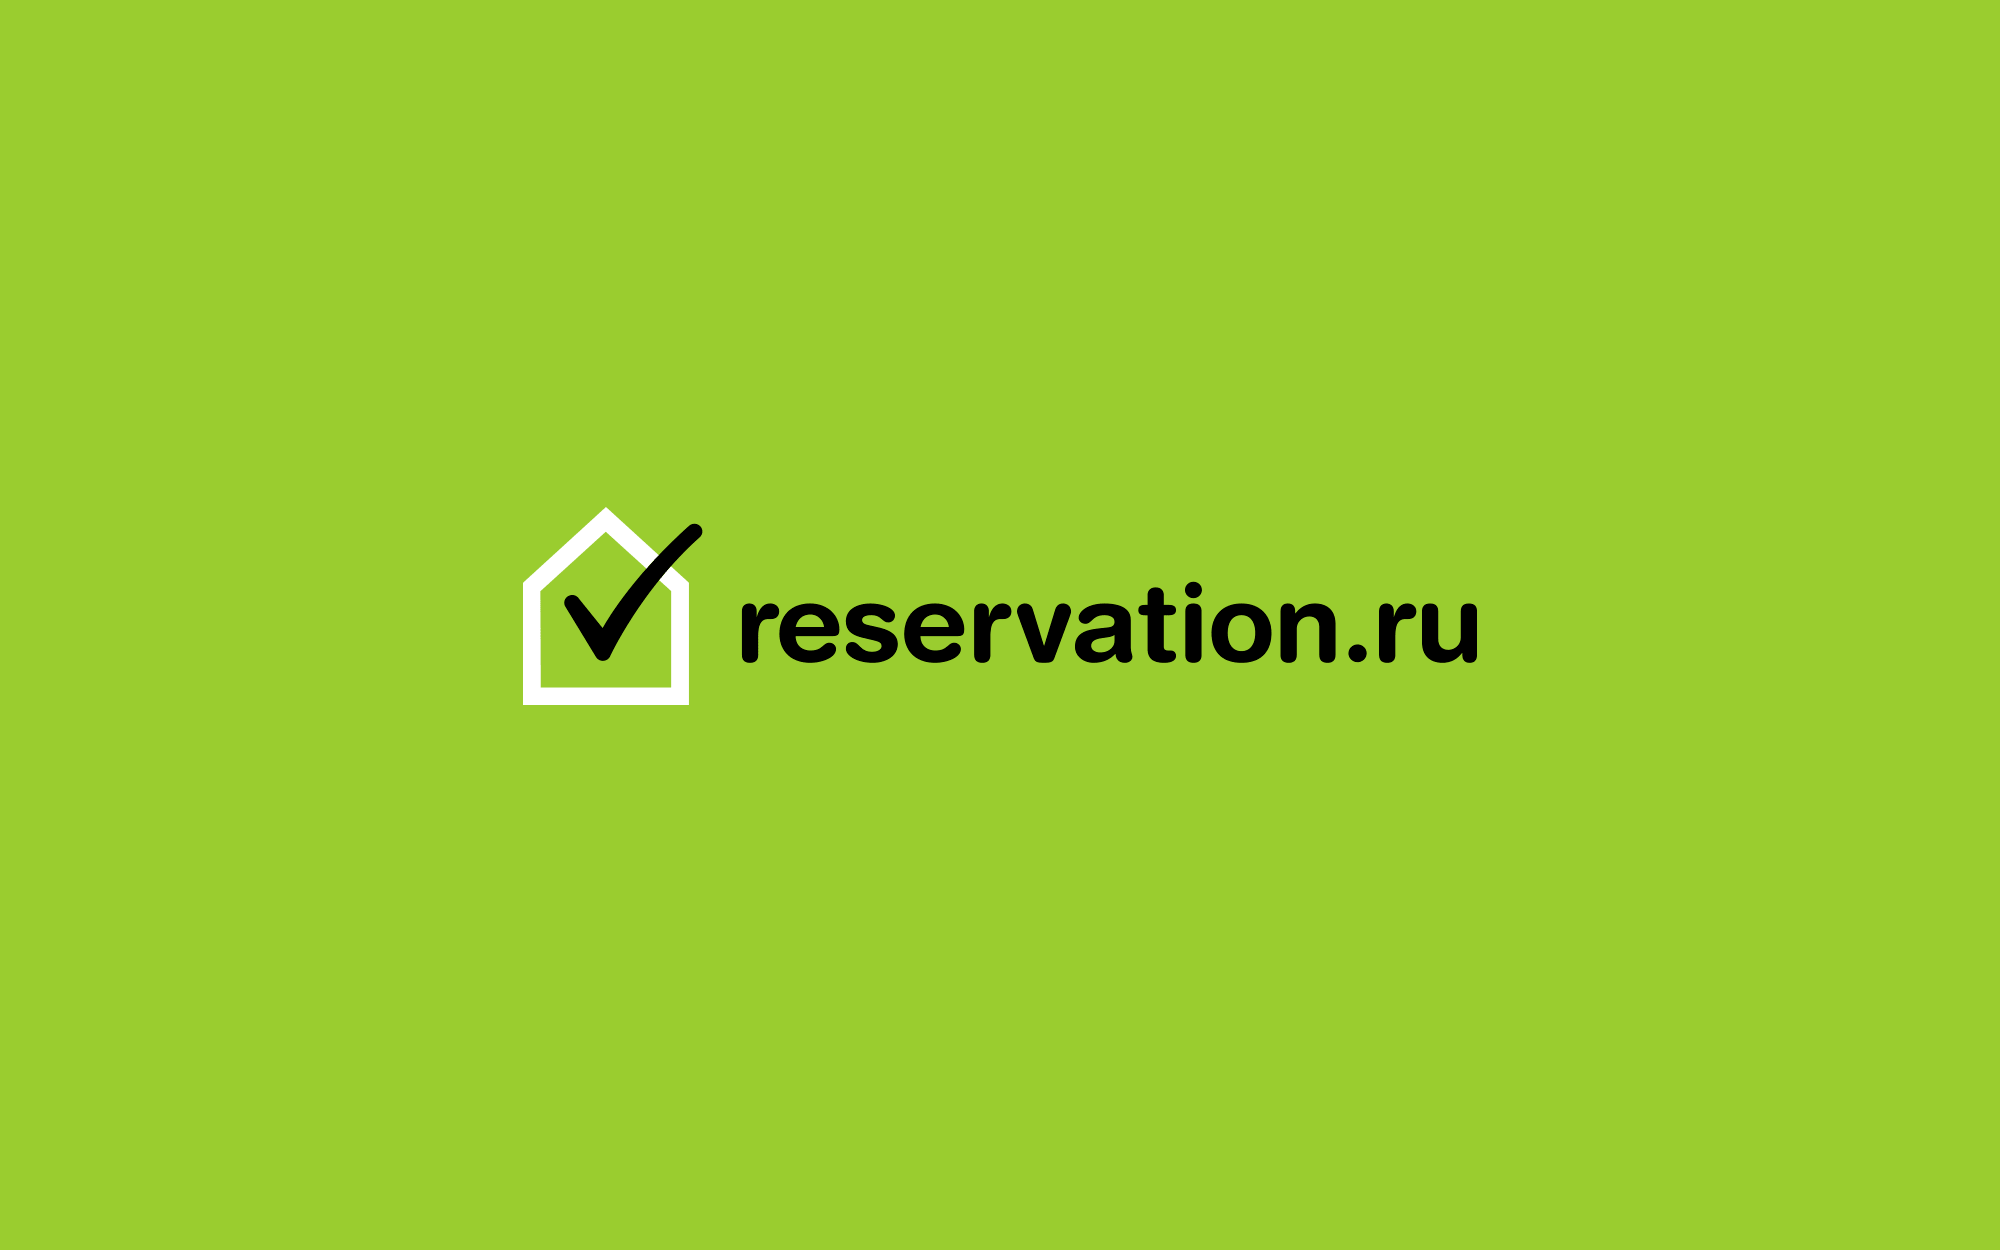 Разработанный логотип сервиса бронирования отелей - Resrvation.ru